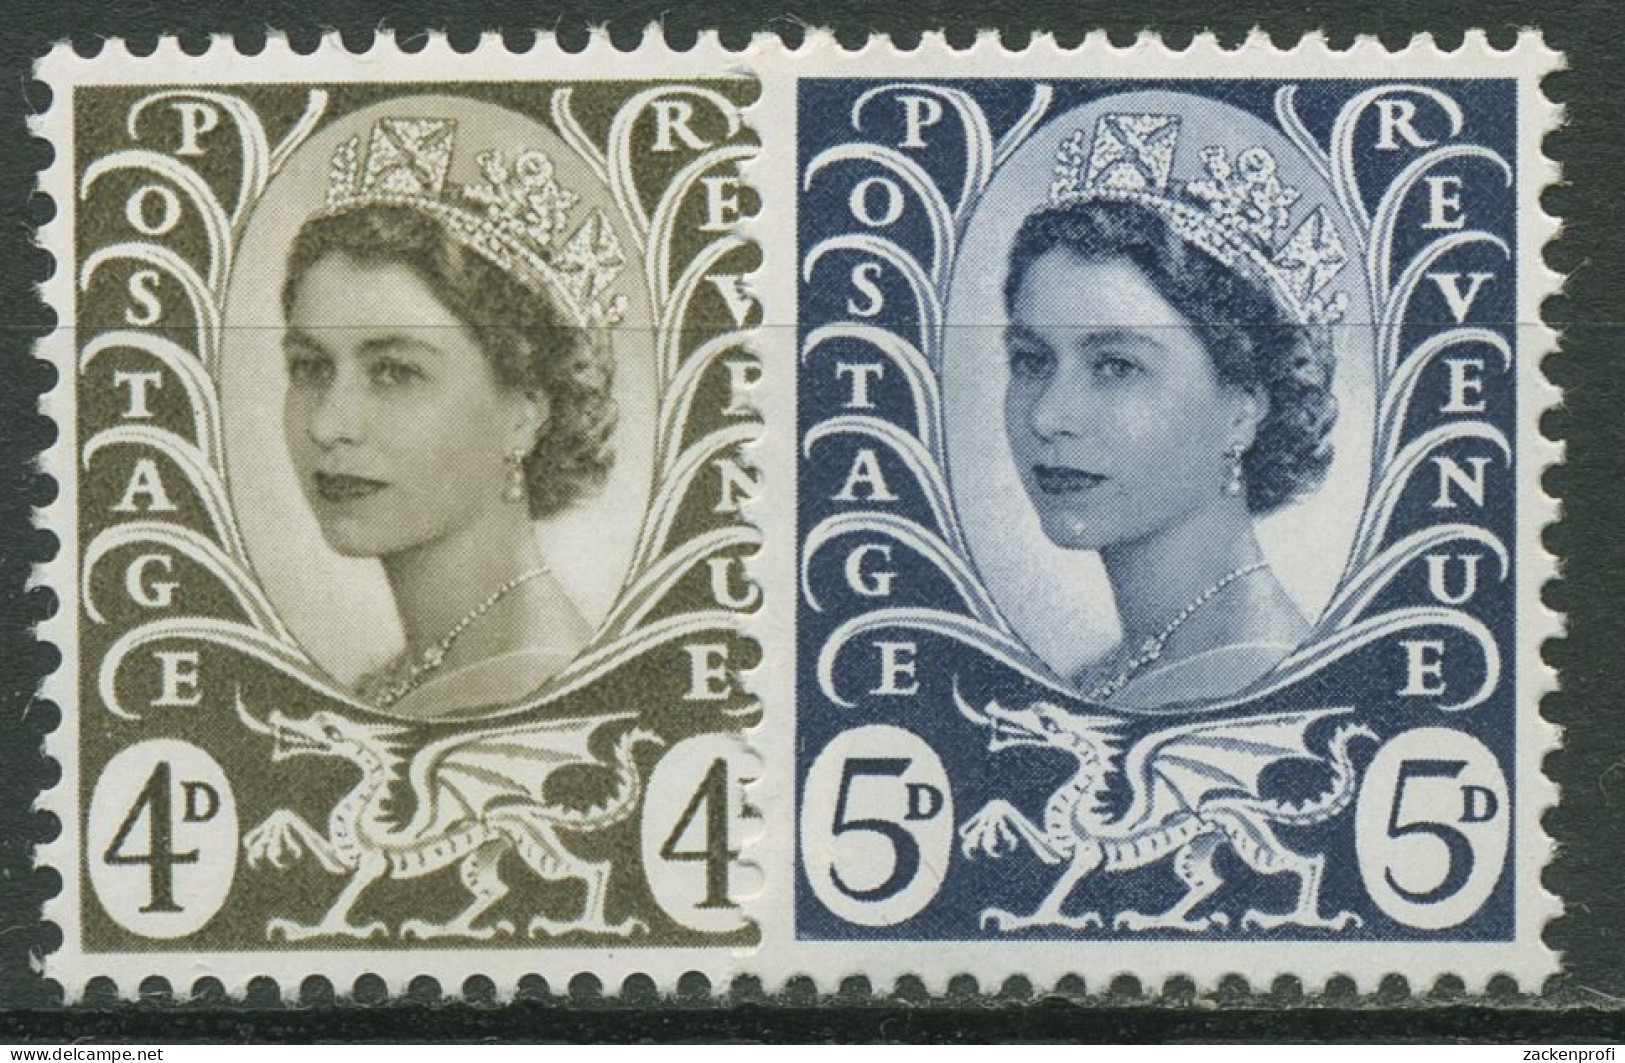 Großbritannien-Wales 1968 Königin Elisabeth II. 9/10 Postfrisch - Gales